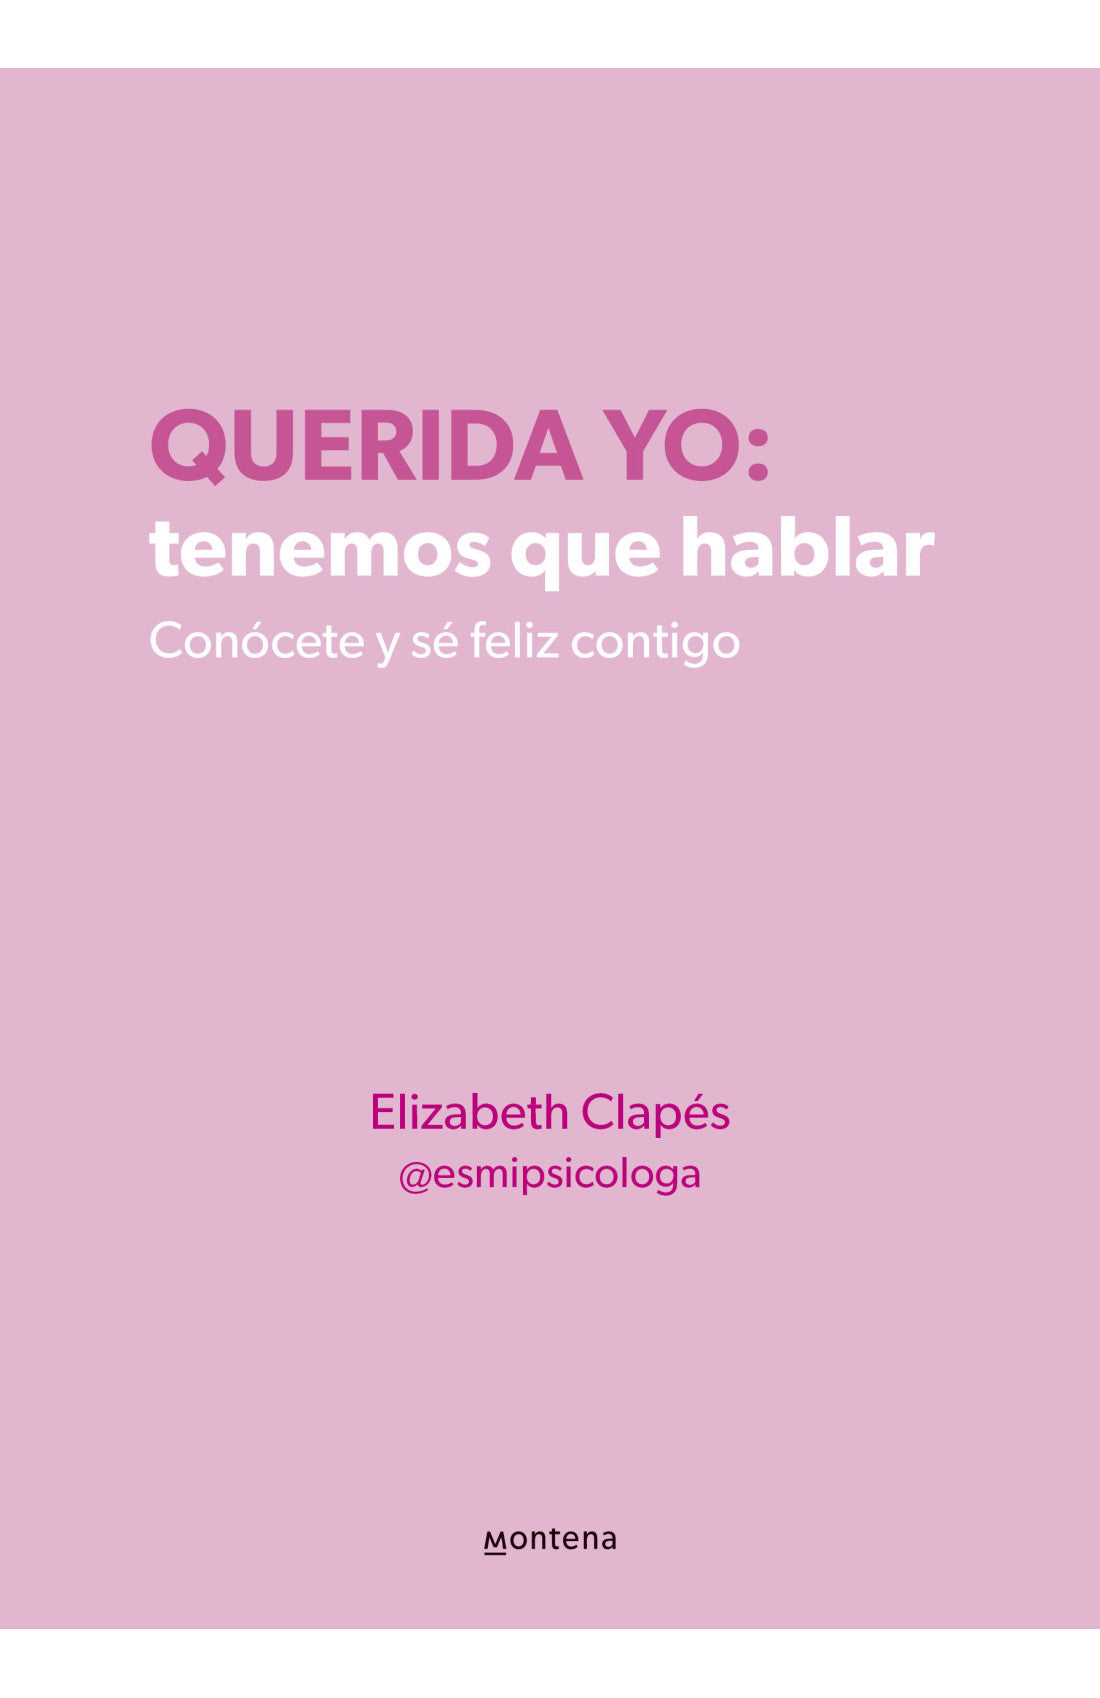 Libro Elizabeth Clapés (@esmipsicologa) - Querida yo: tenemos que hablar.